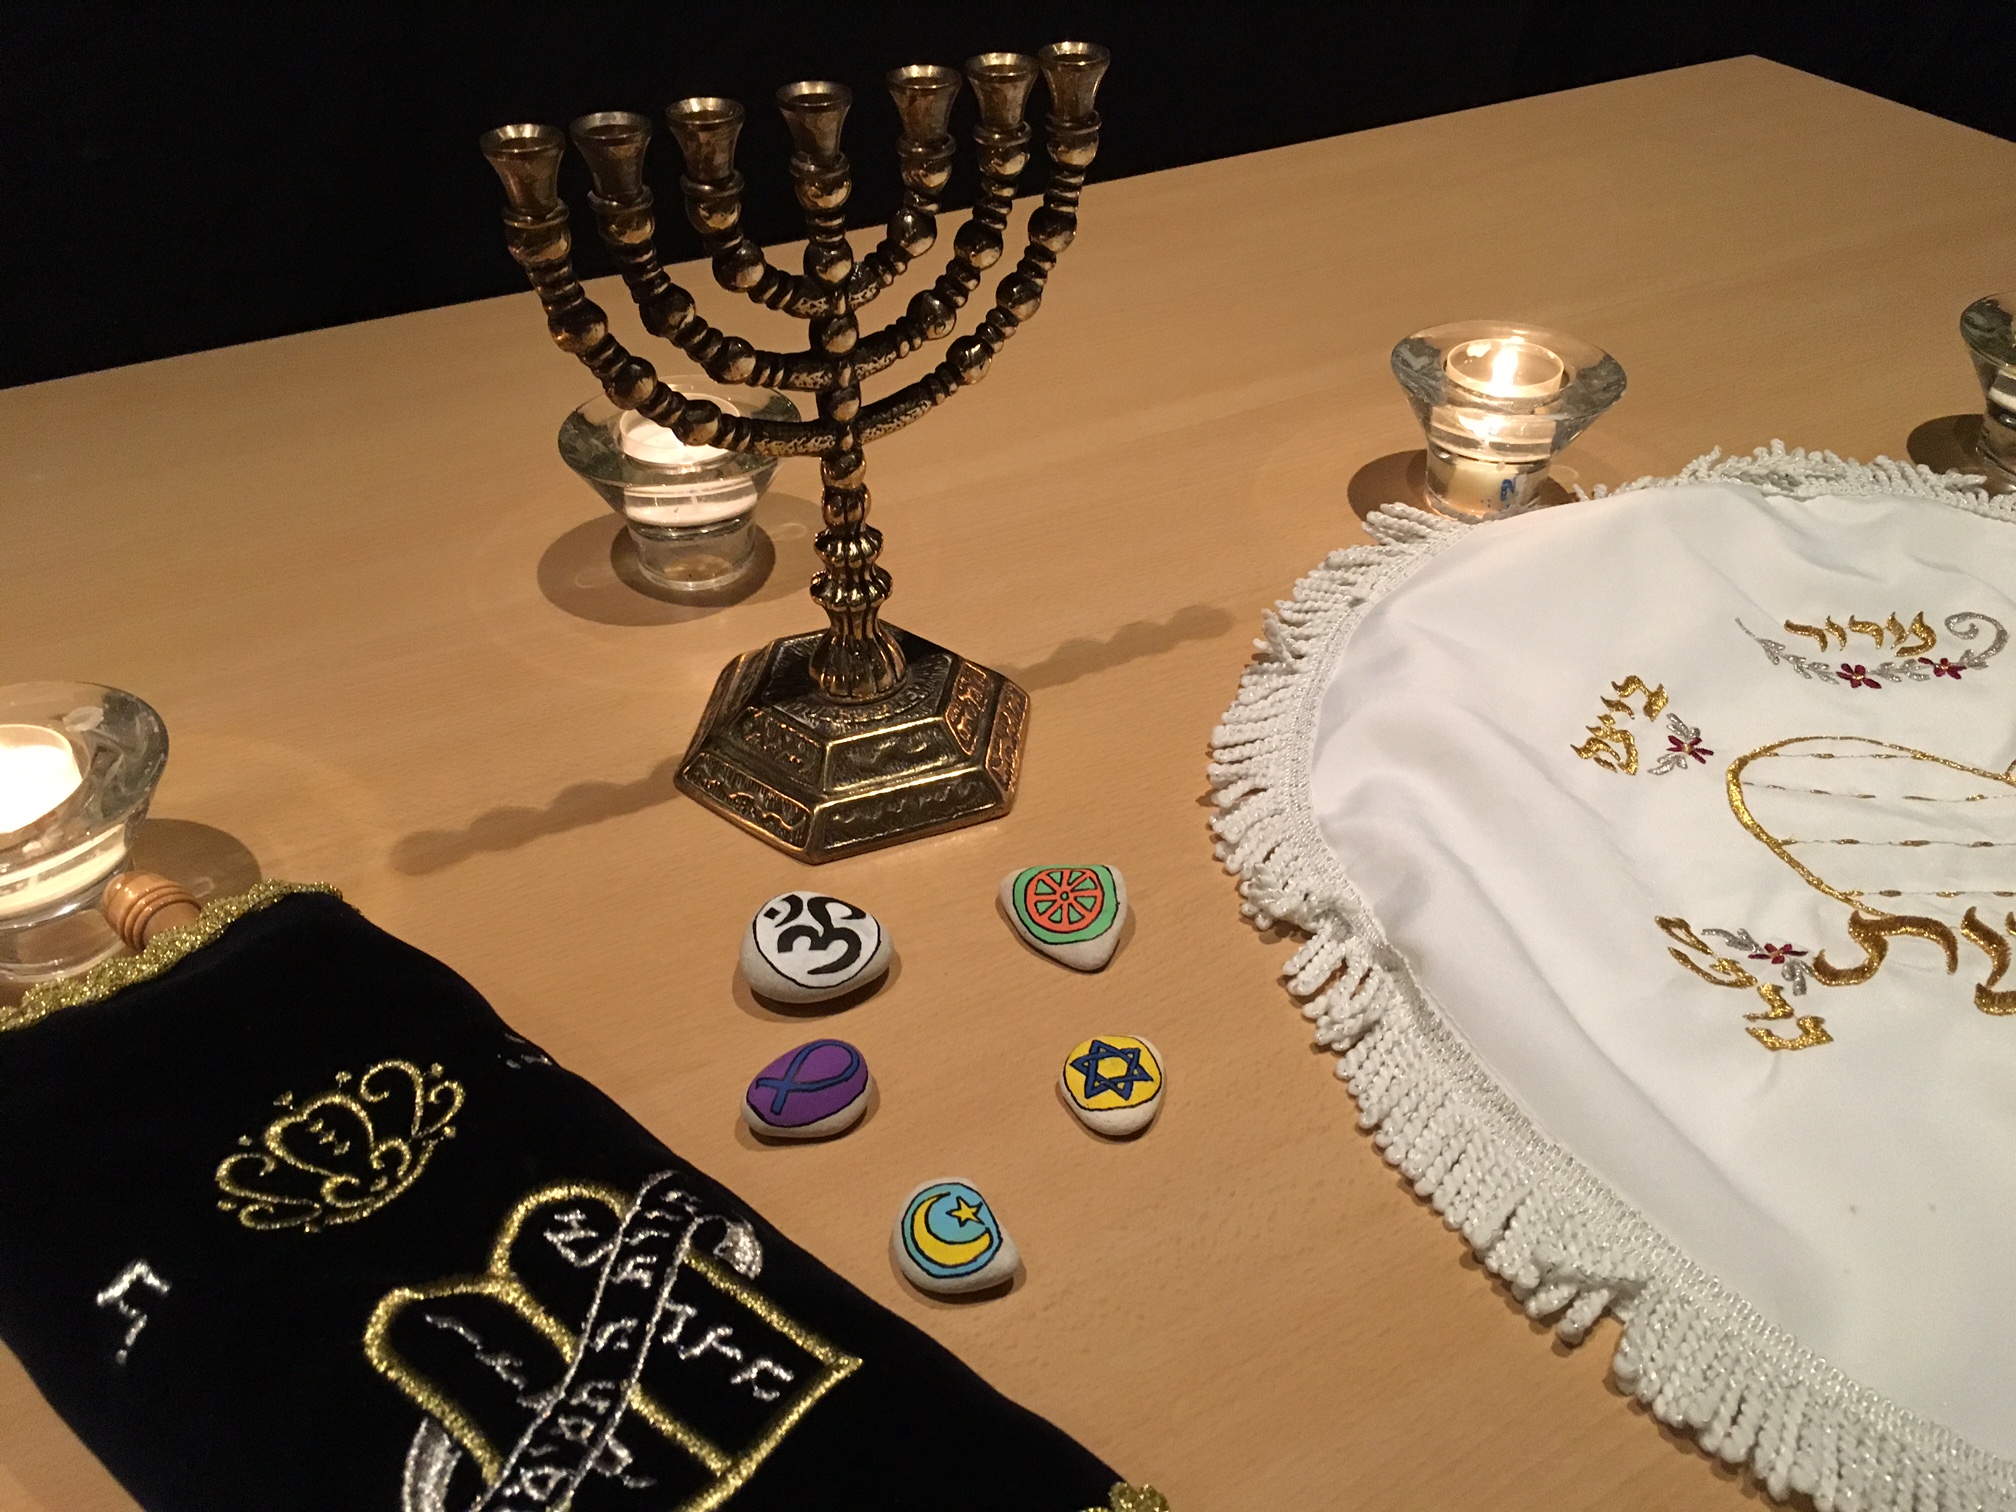 5. Tag in Hohenfelde / Mit “Willi wills wissen” das Judentum kennenlernen